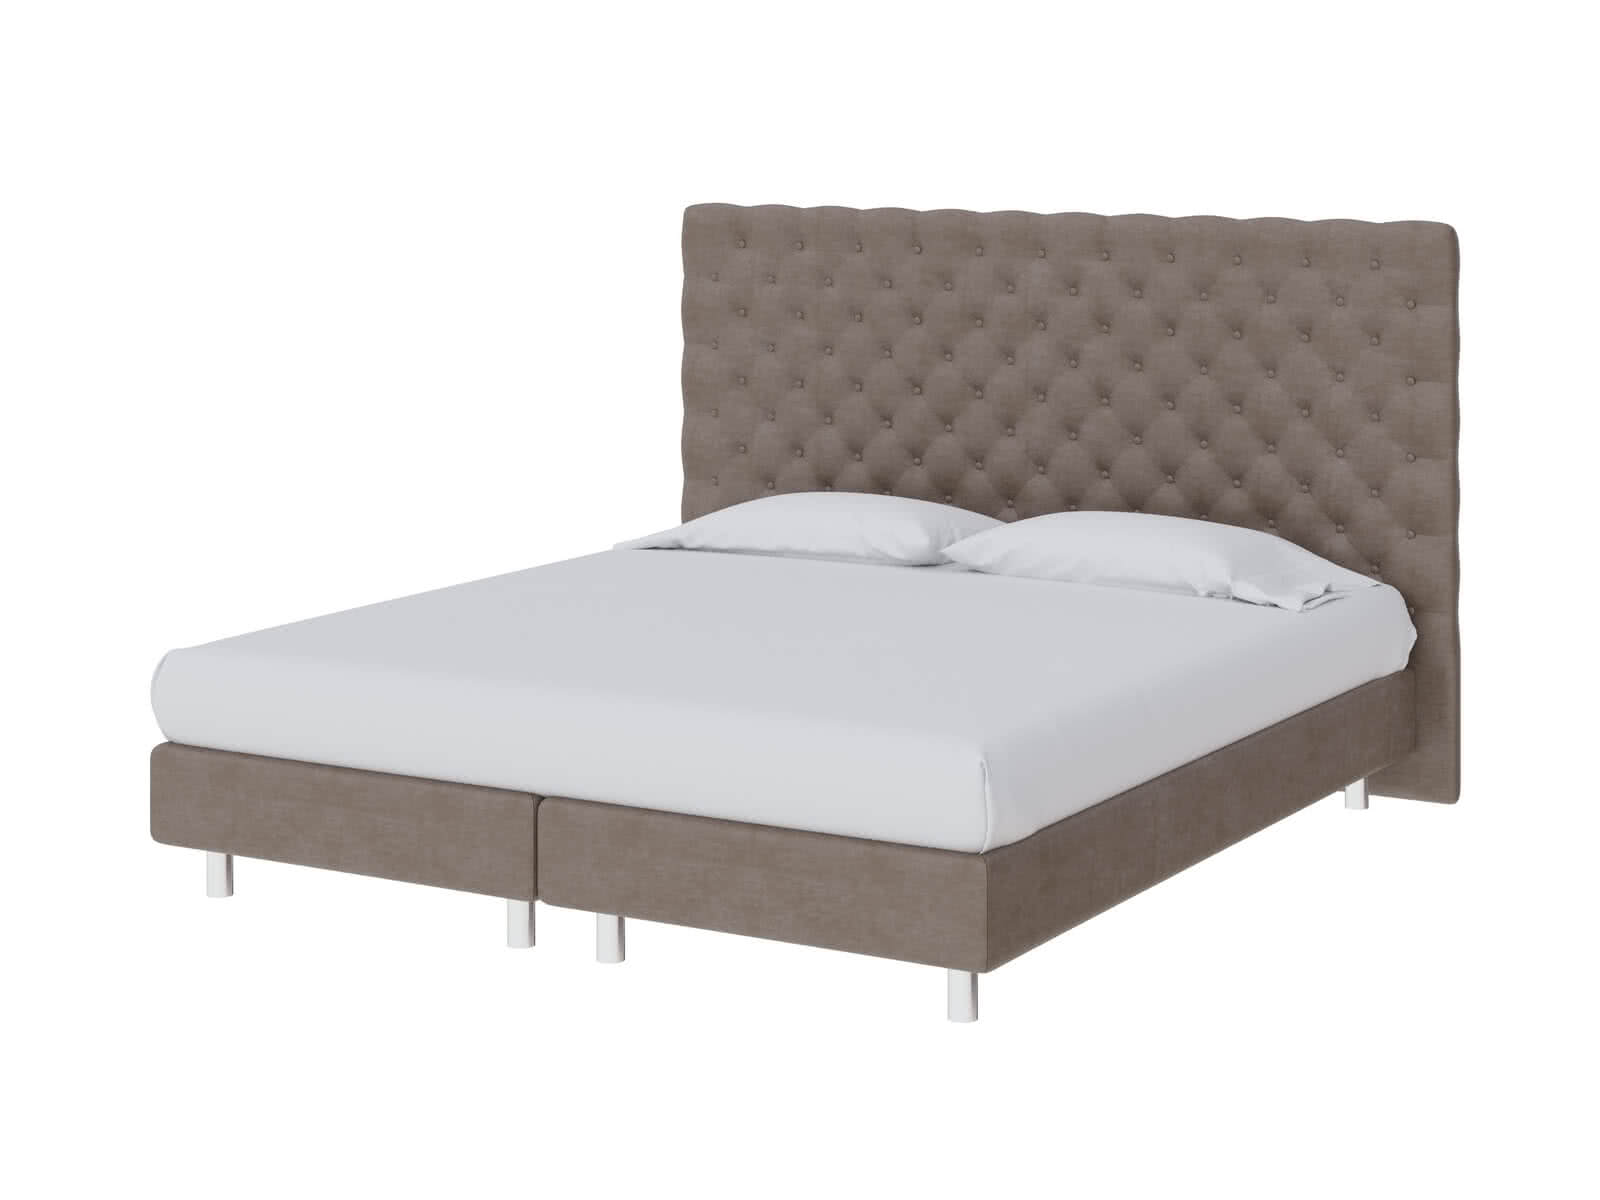 Купить кровать ProSon Кровать ProSon Europe Paris Lift, Лофти Лён 160 х 200 см Лофти Лён дешево на официальном сайте